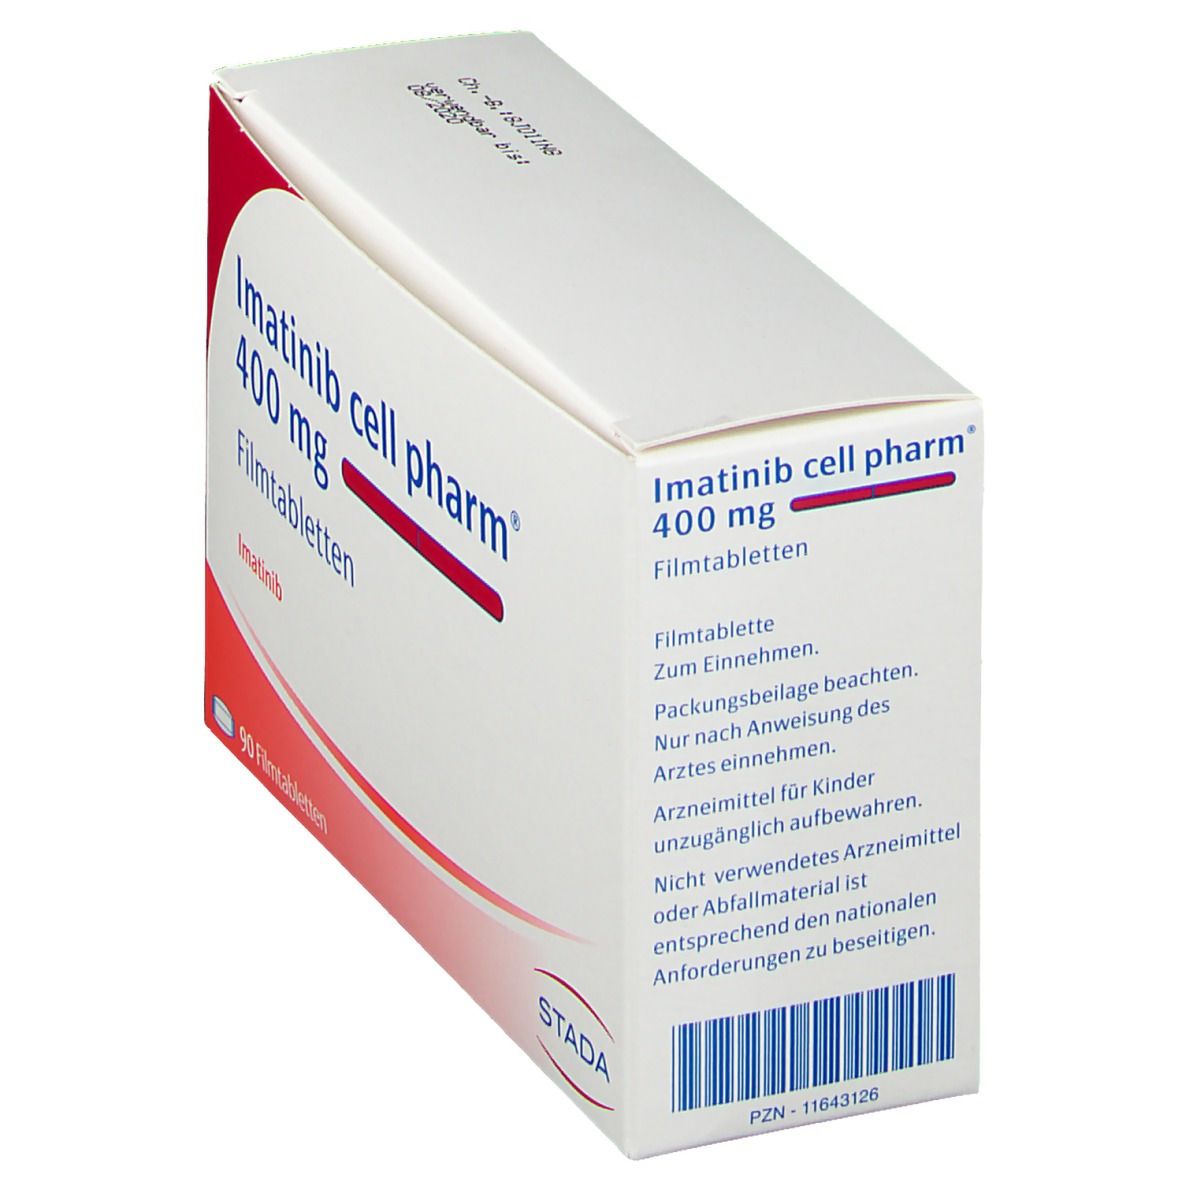 Imatinib cell pharm® 400 mg